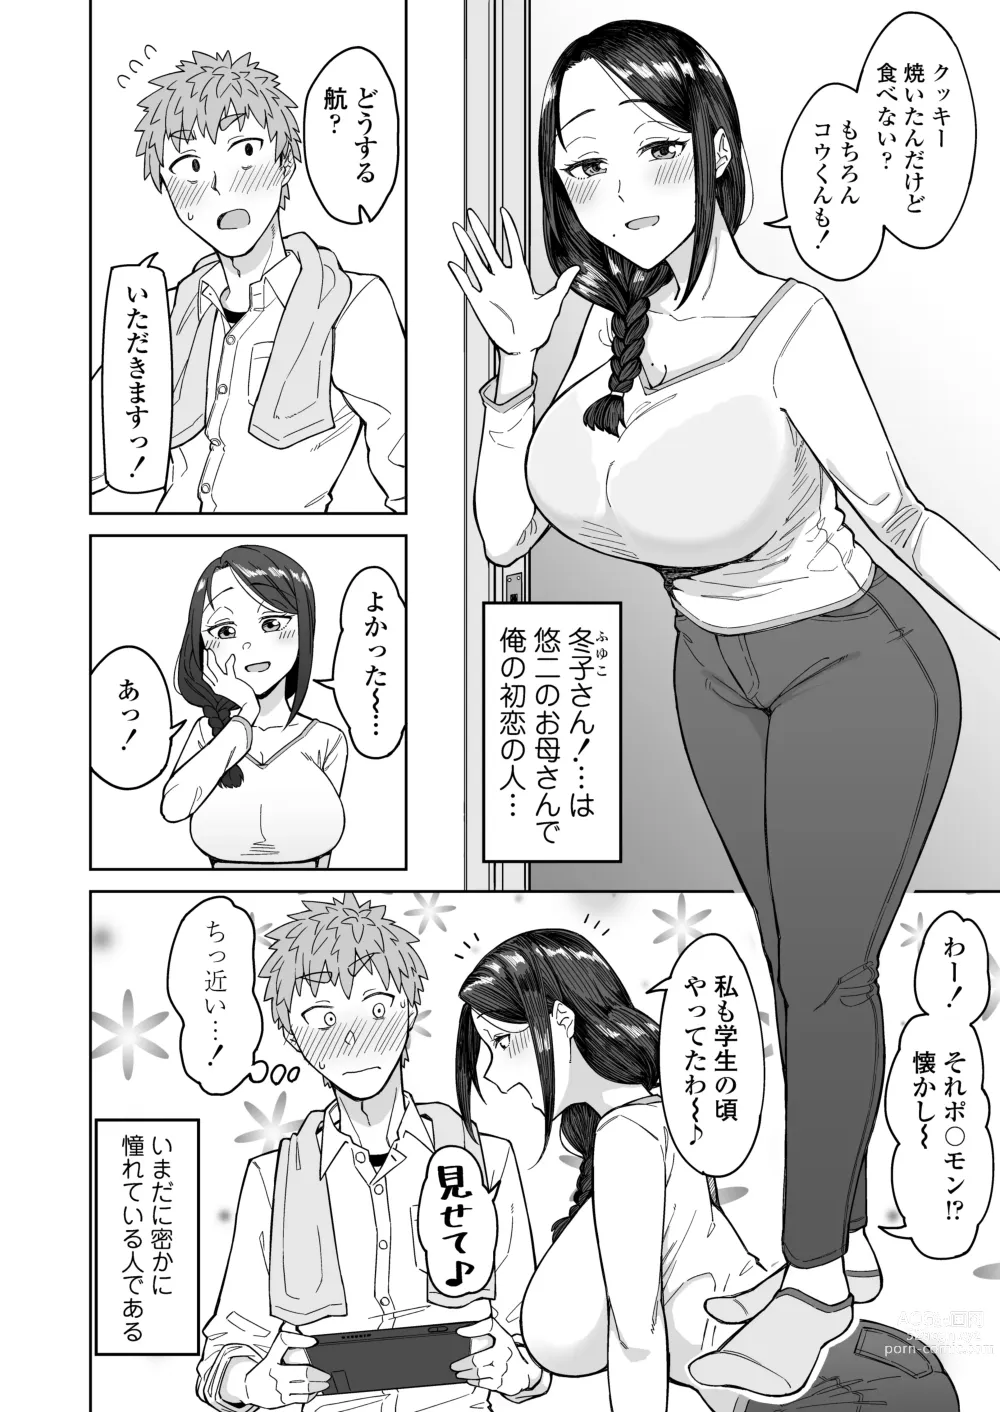 Page 3 of doujinshi Hatsukoi no Hito wa, Tomodachi no Mama.